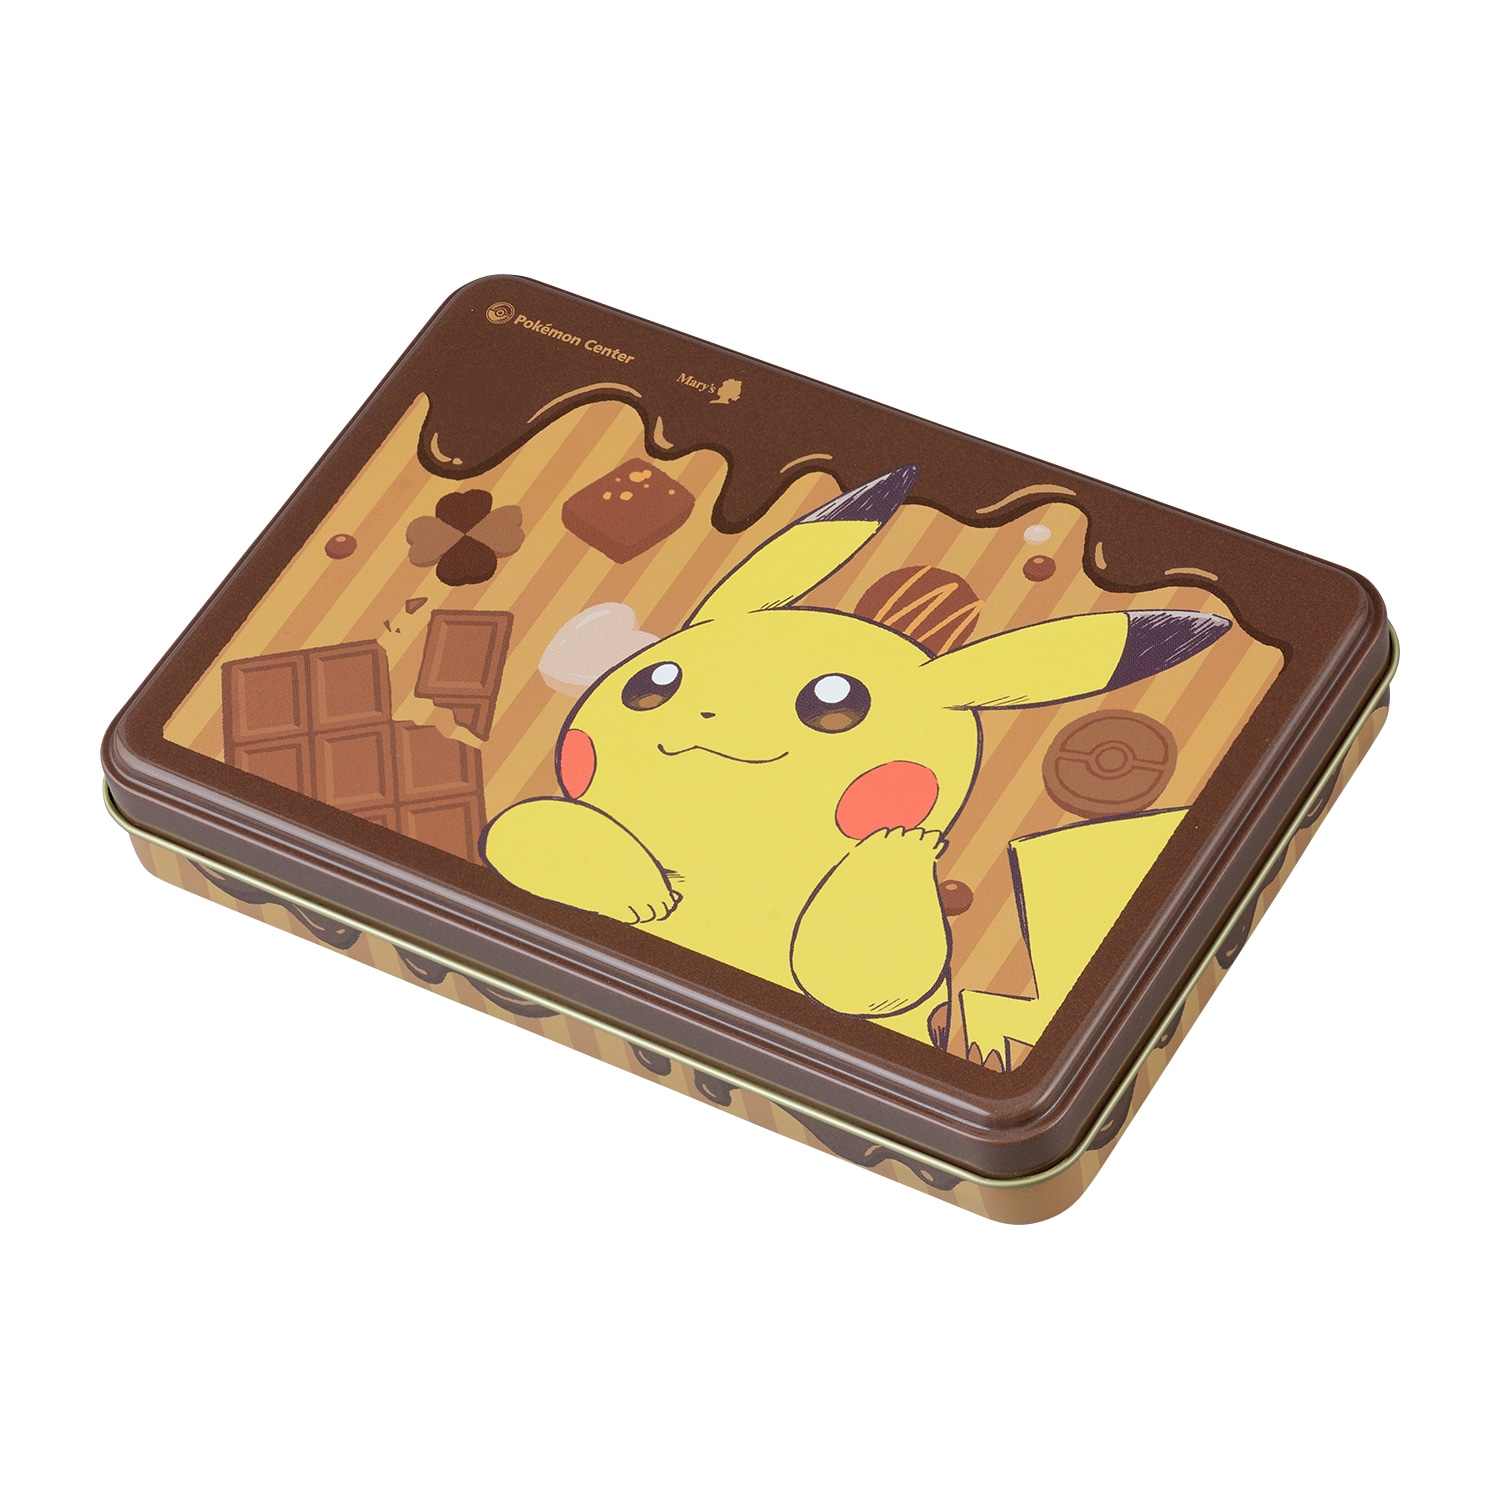 Pokemon Center Original Pikachu Chocolate